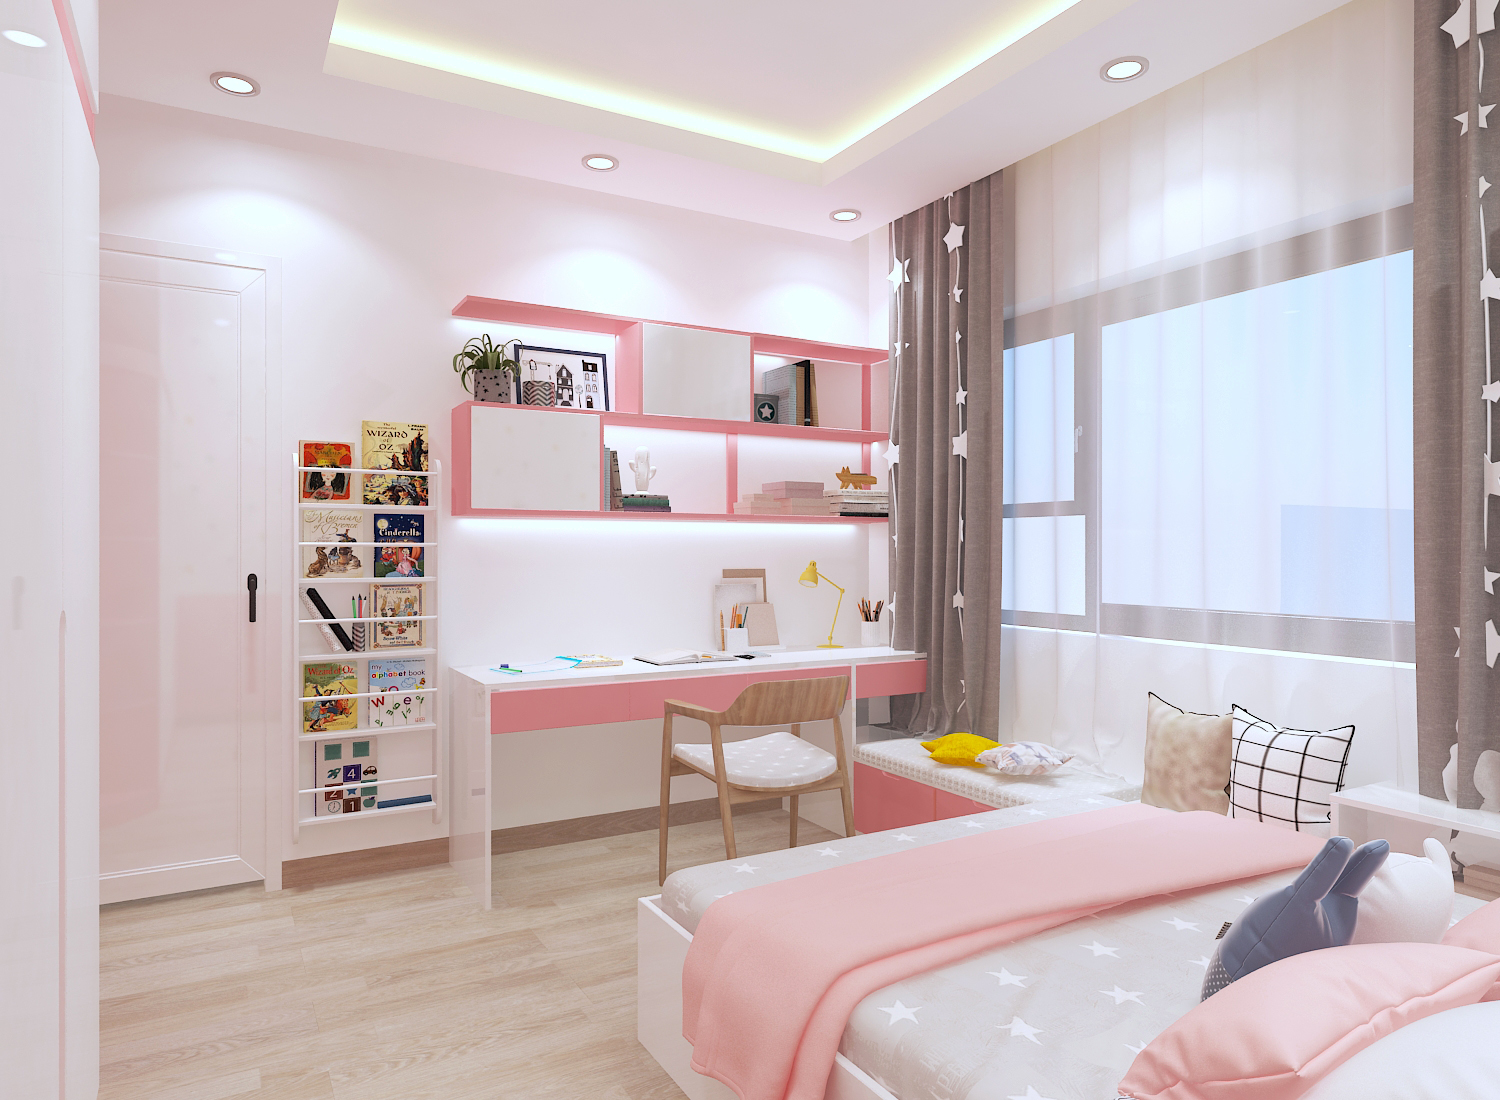 Mẫu phòng ngủ dành cho con gái tuổi teen năng động, trẻ trung. Hệ rèm cửa hai lớp giúp điều tiết linh hoạt ánh sáng tự nhiên vào phòng.